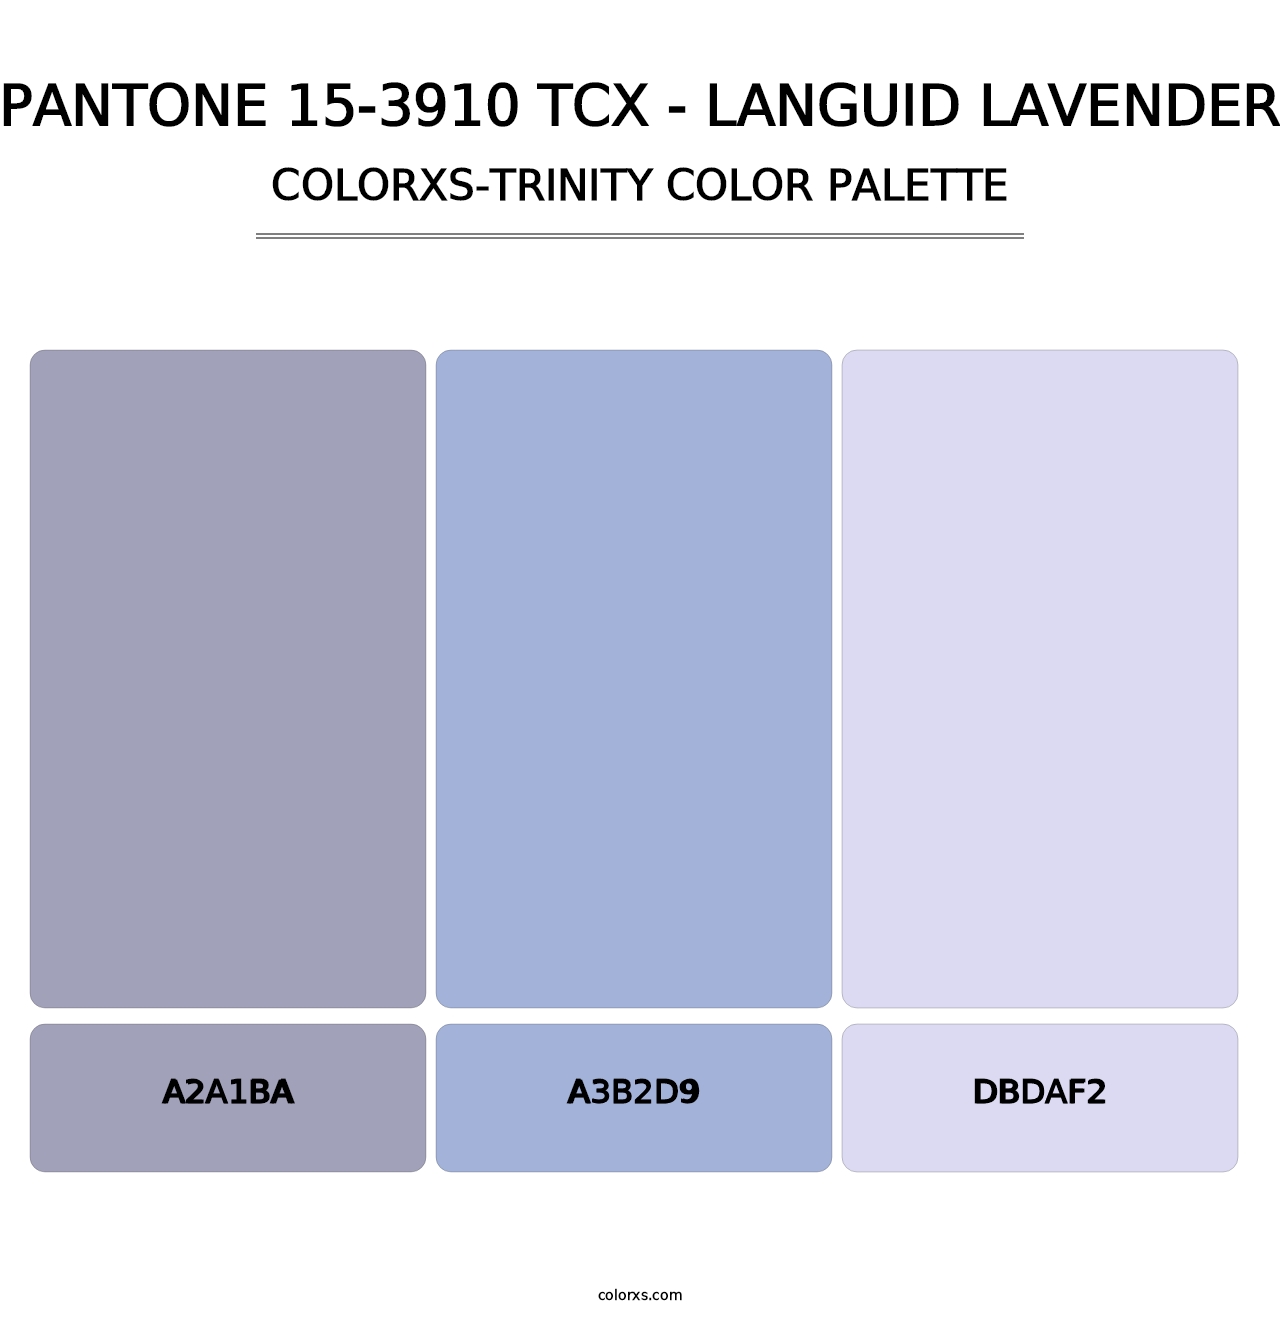 PANTONE 15-3910 TCX - Languid Lavender - Colorxs Trinity Palette